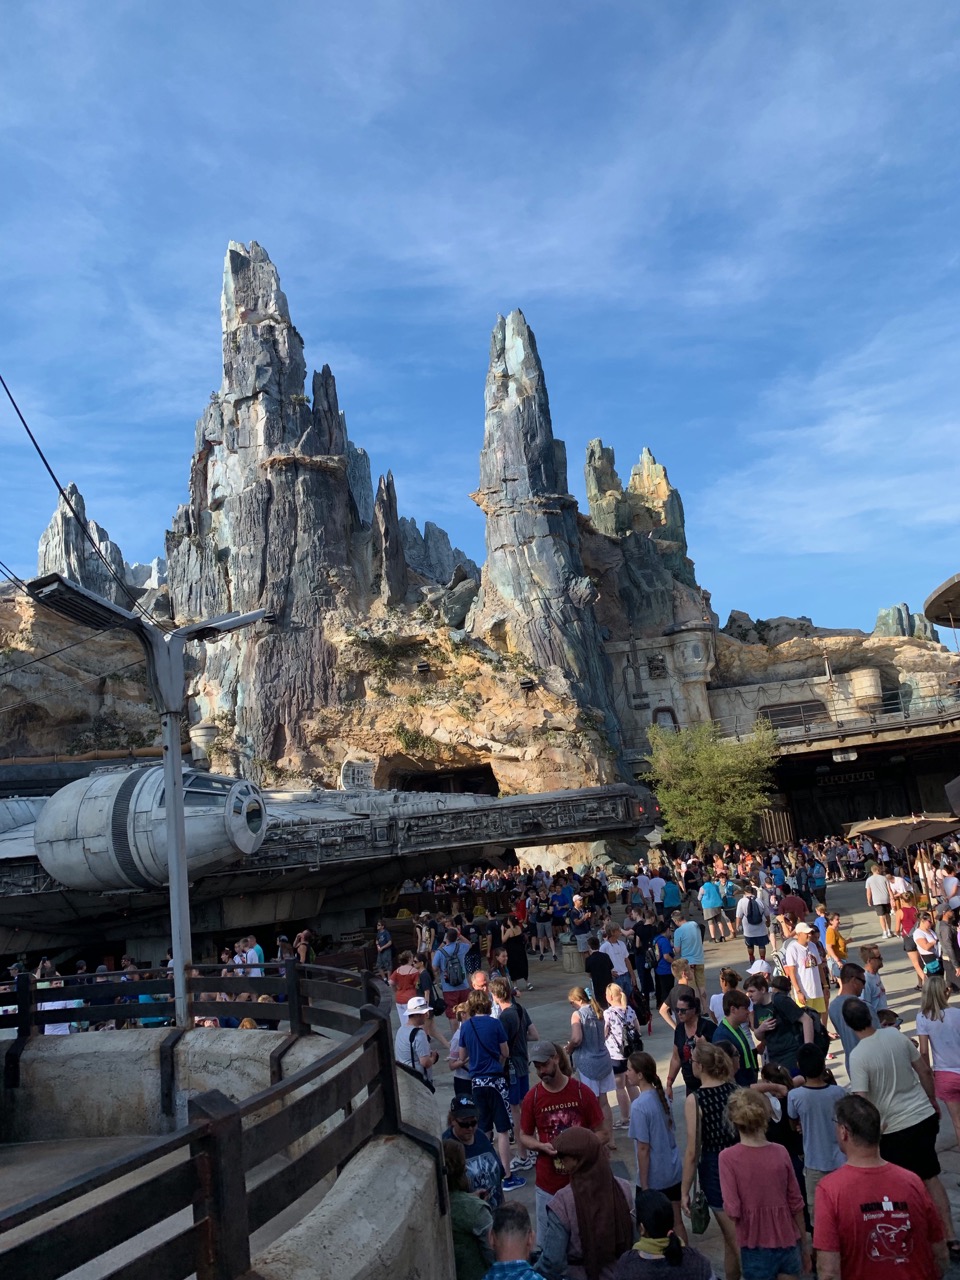 Informe del viaje de apertura de Disney World Galaxy's Edge, parte 3